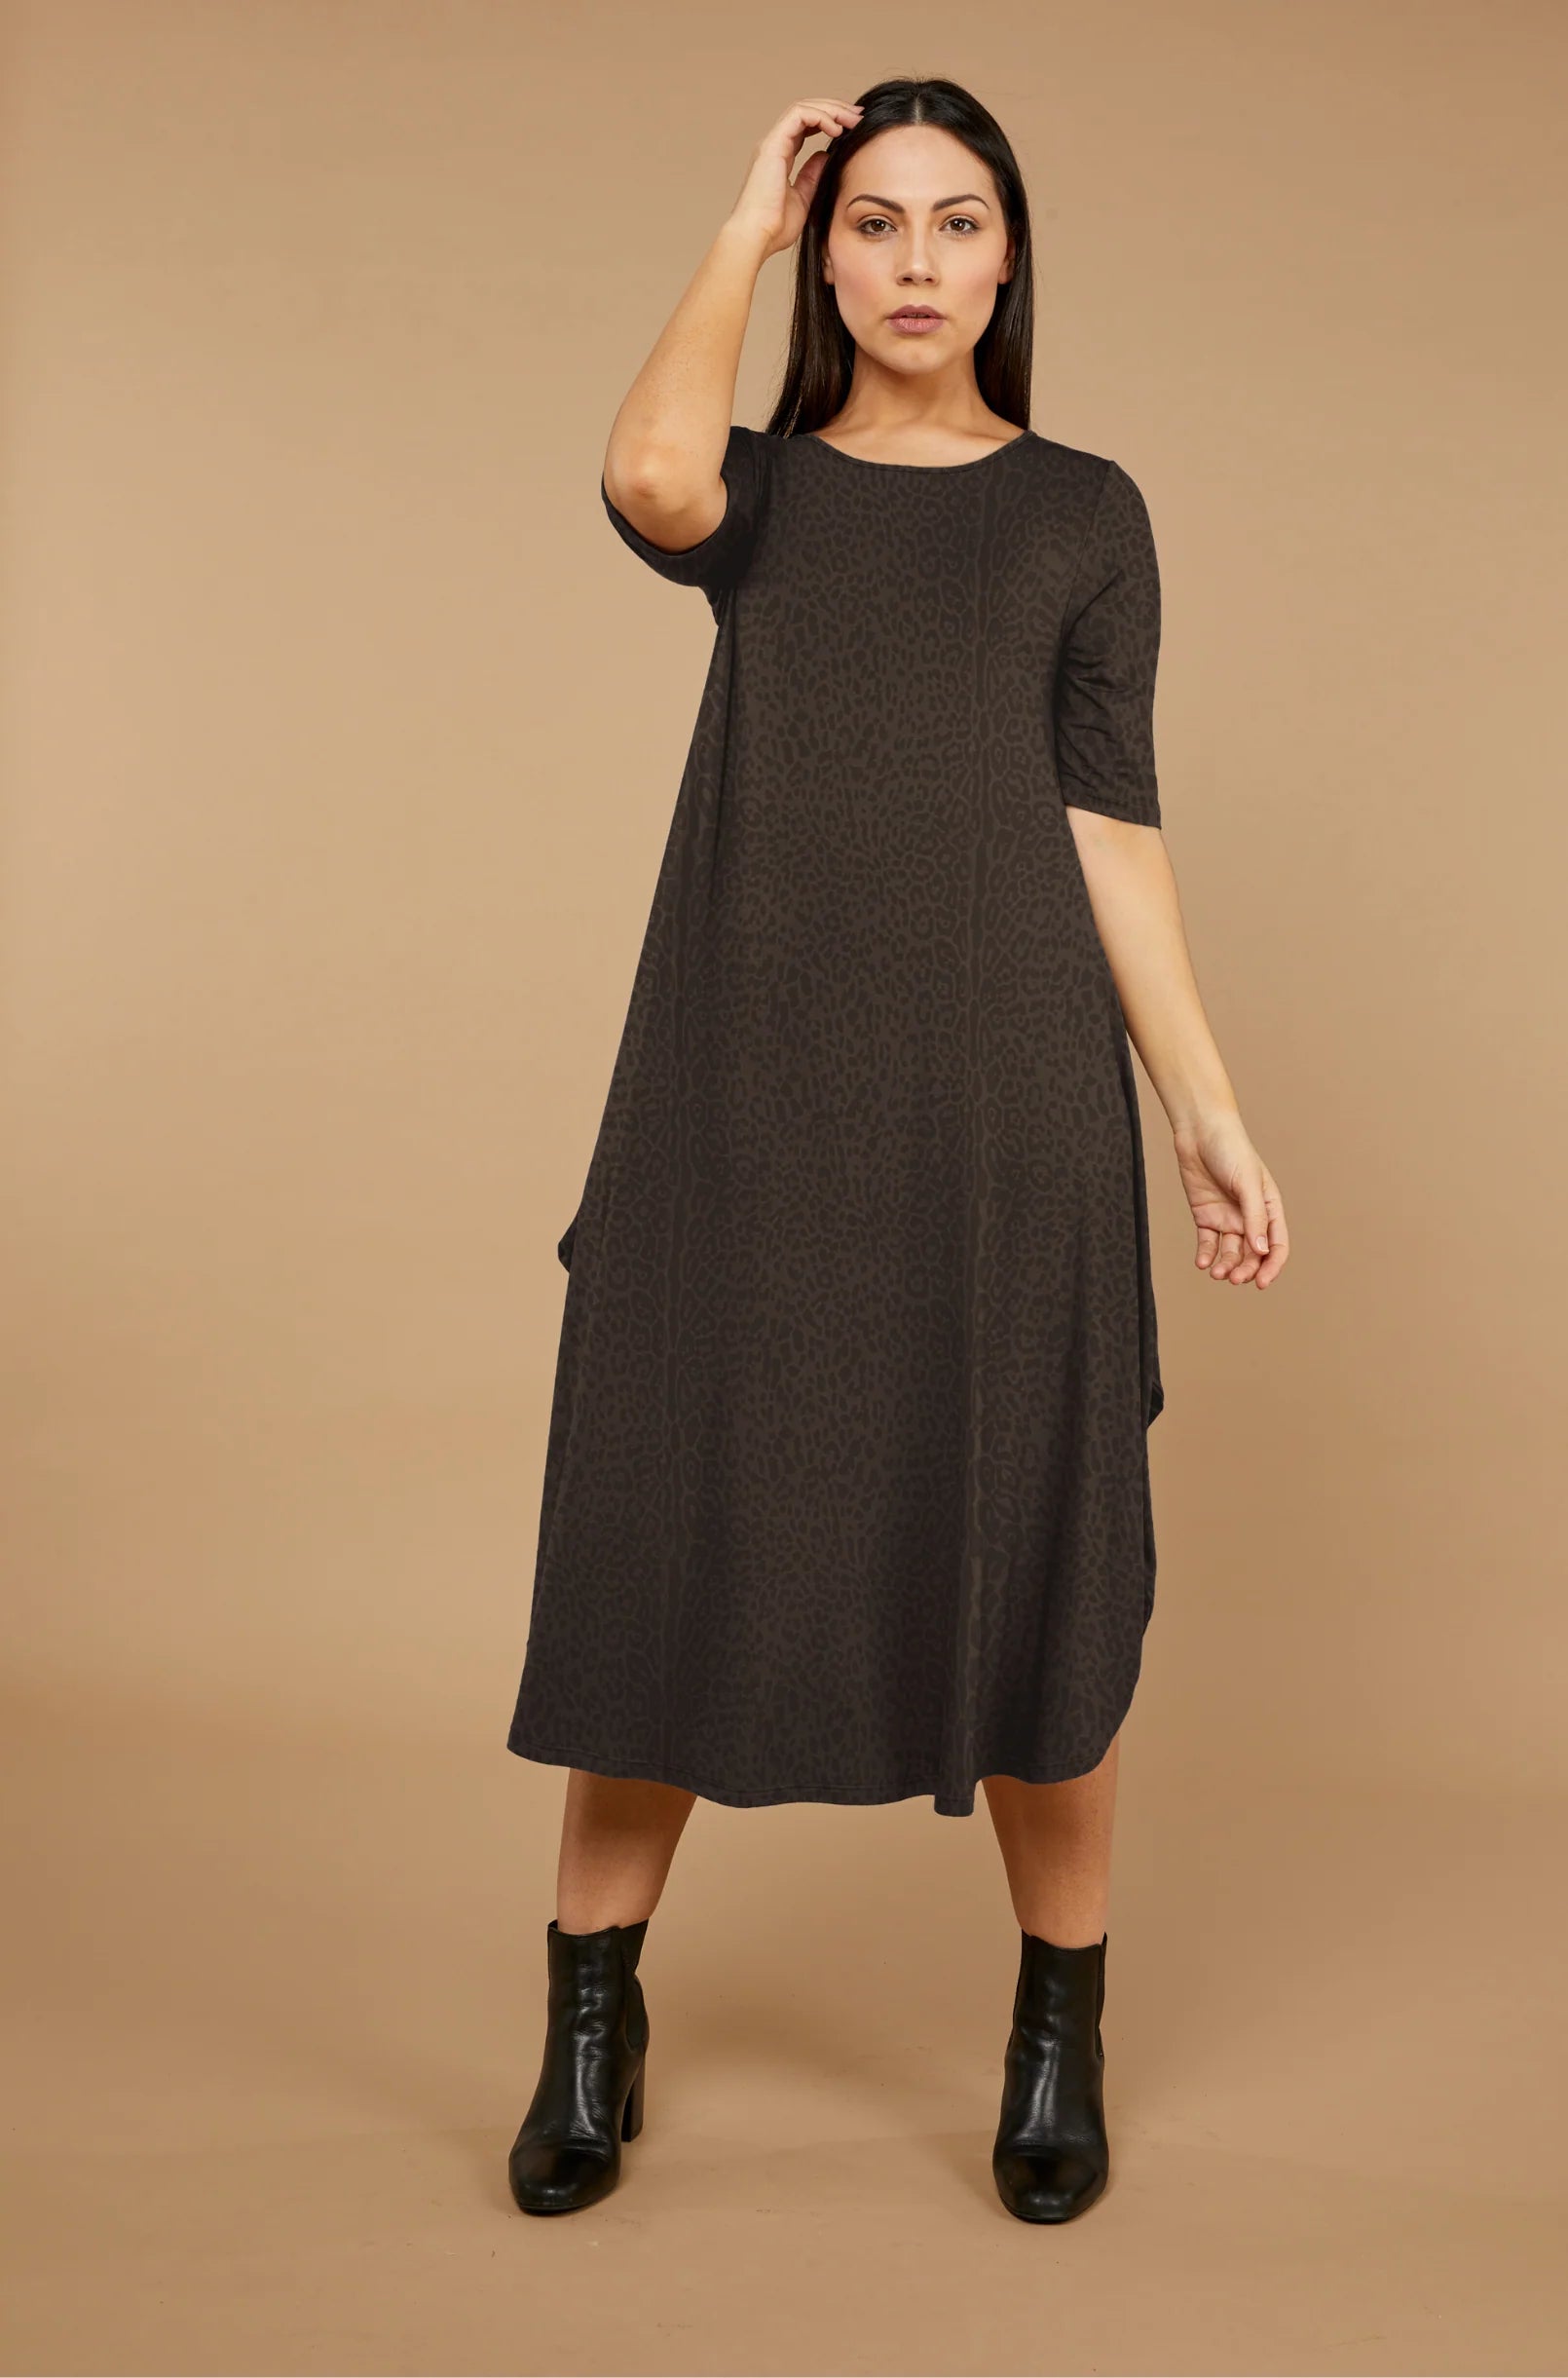 Tani Original Tri Dress Print